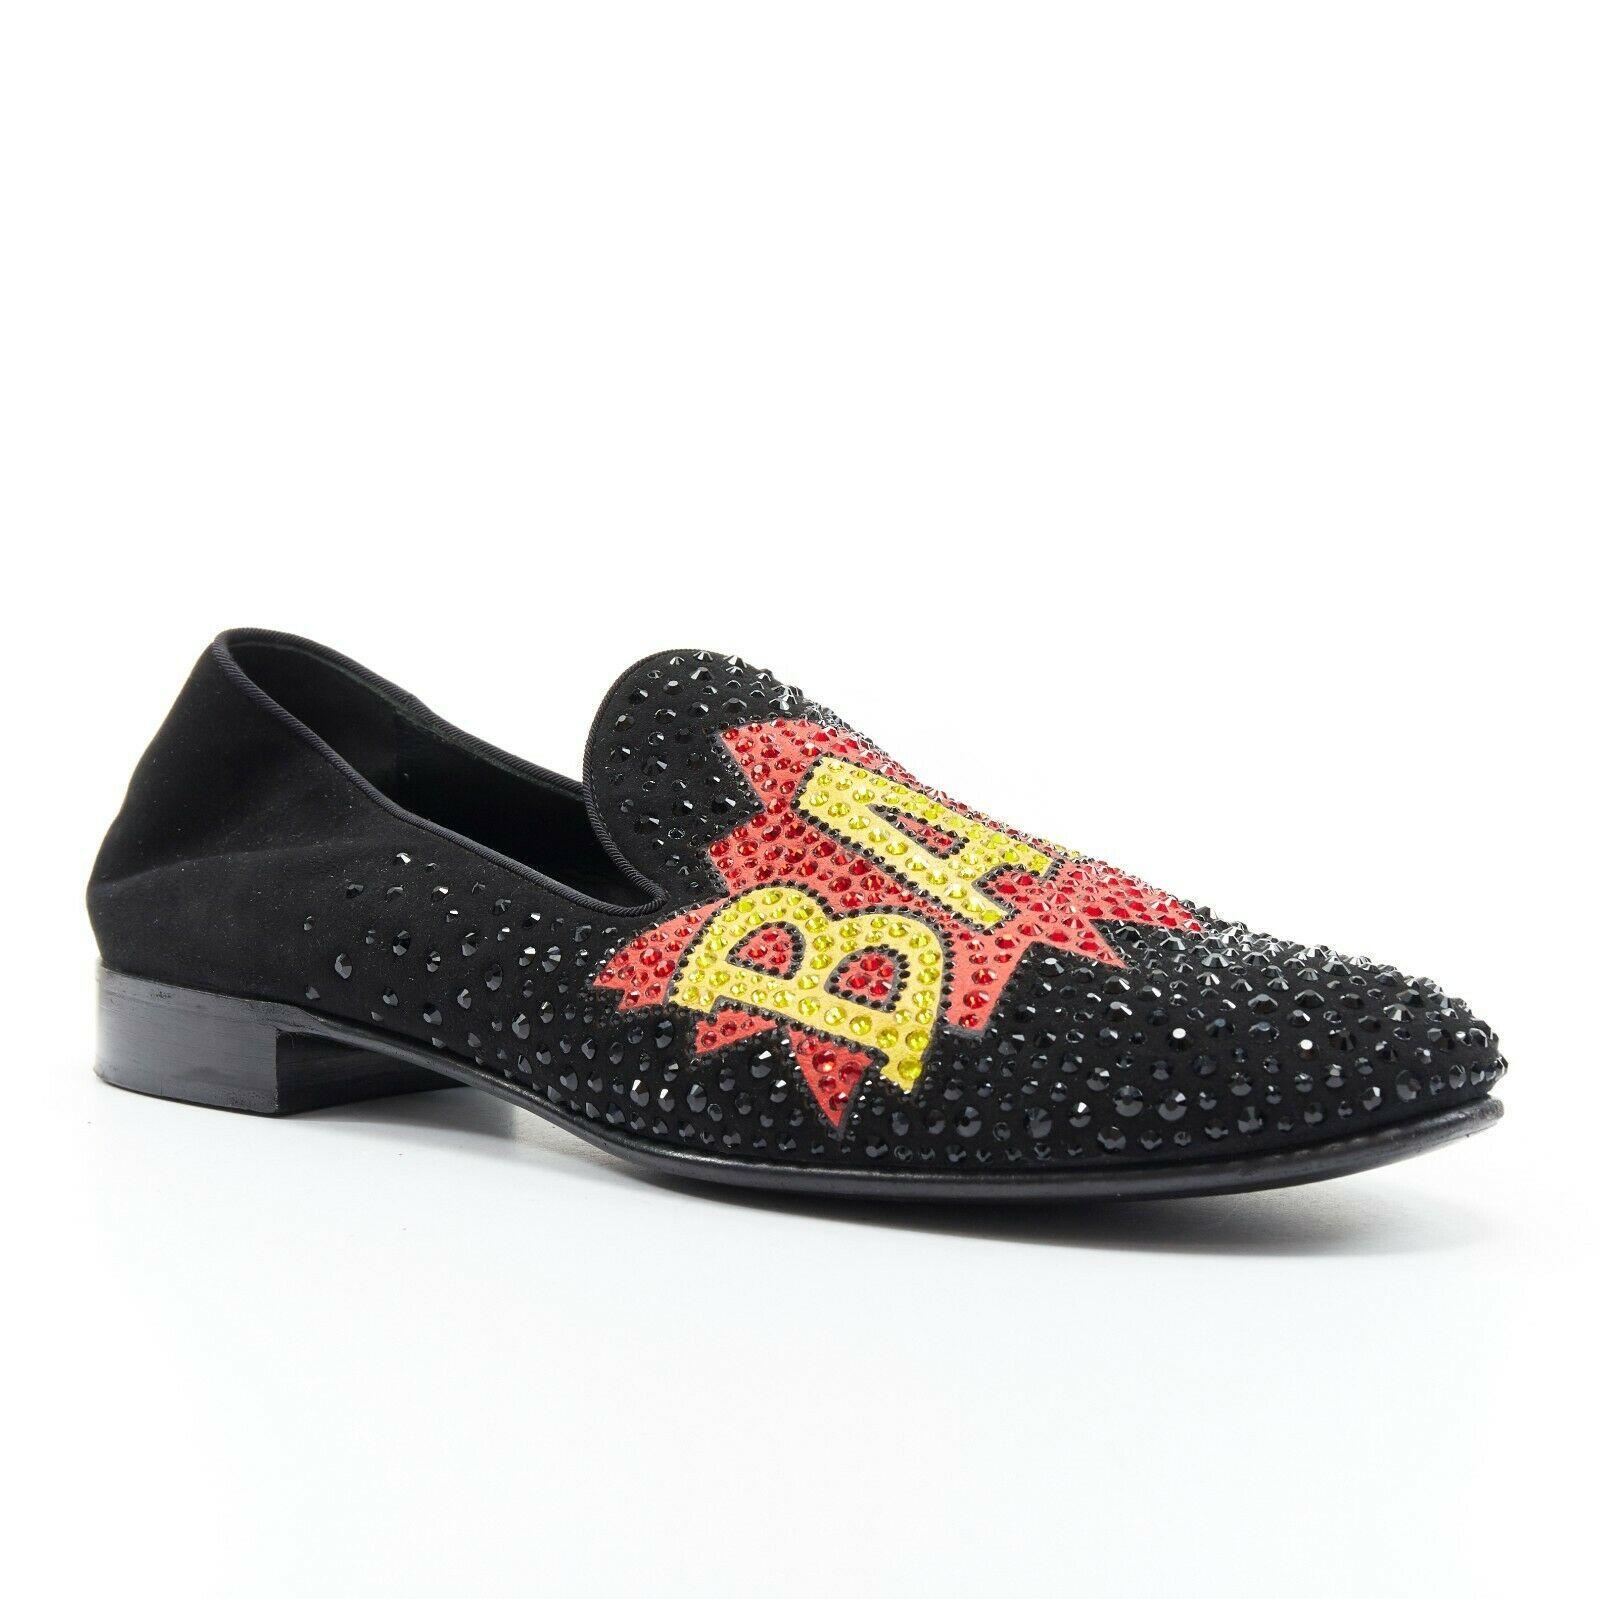 Black GIUSEPPE ZANOTTI 2019 Bam crystal embellished pop art black suede loafer EU44